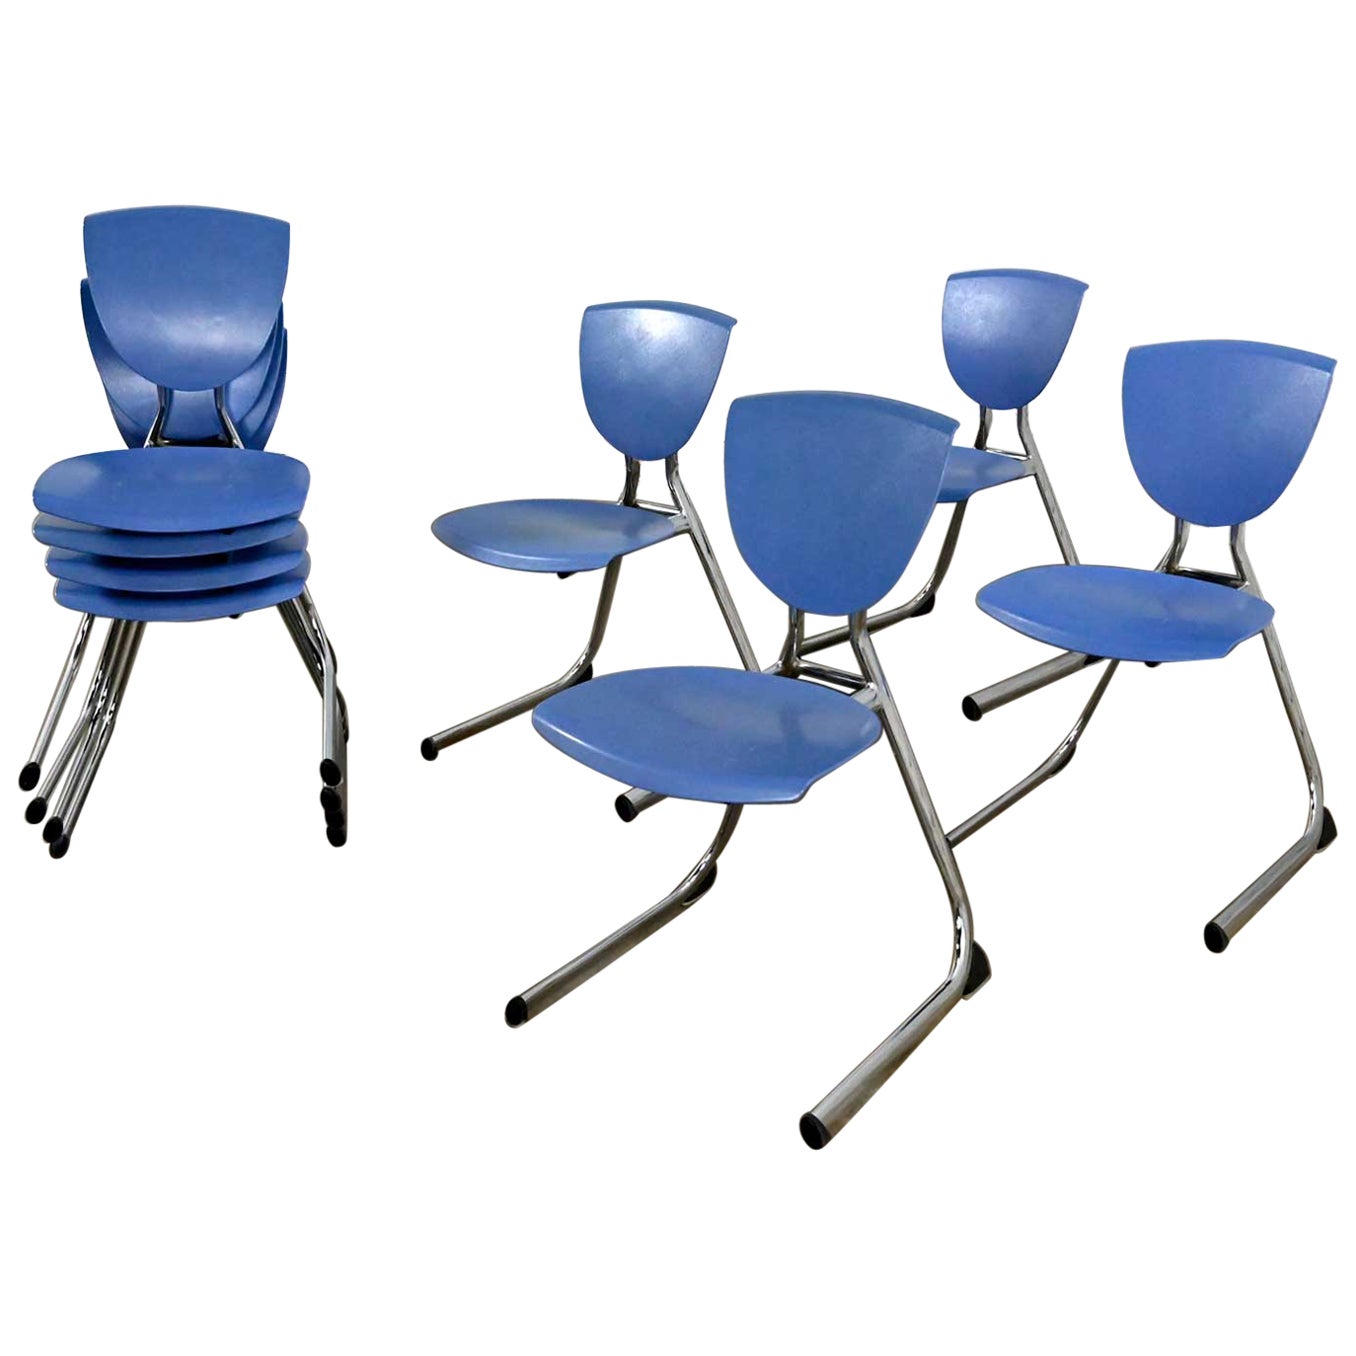 8 chaises de salle à manger cantilever modernes bleu clair en plastique et chrome